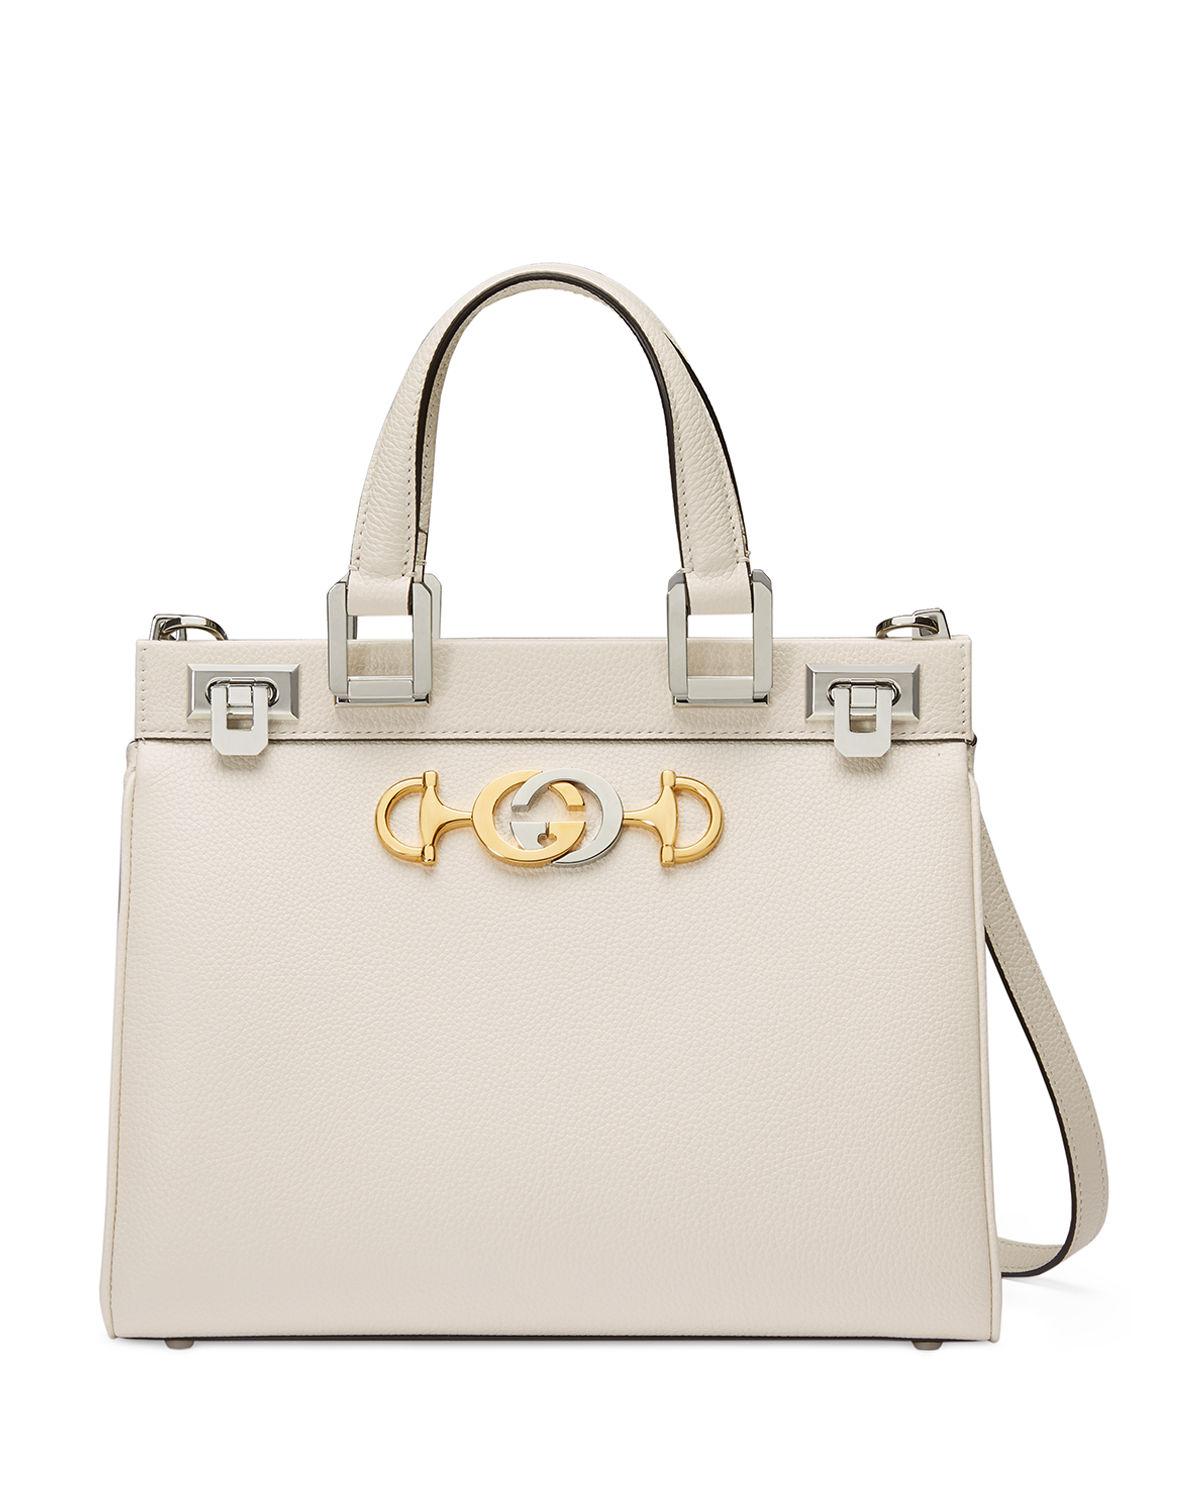 Gucci Ostrich Small Zumi Top Handle Bag - Blue Shoulder Bags, Handbags -  GUC1315876